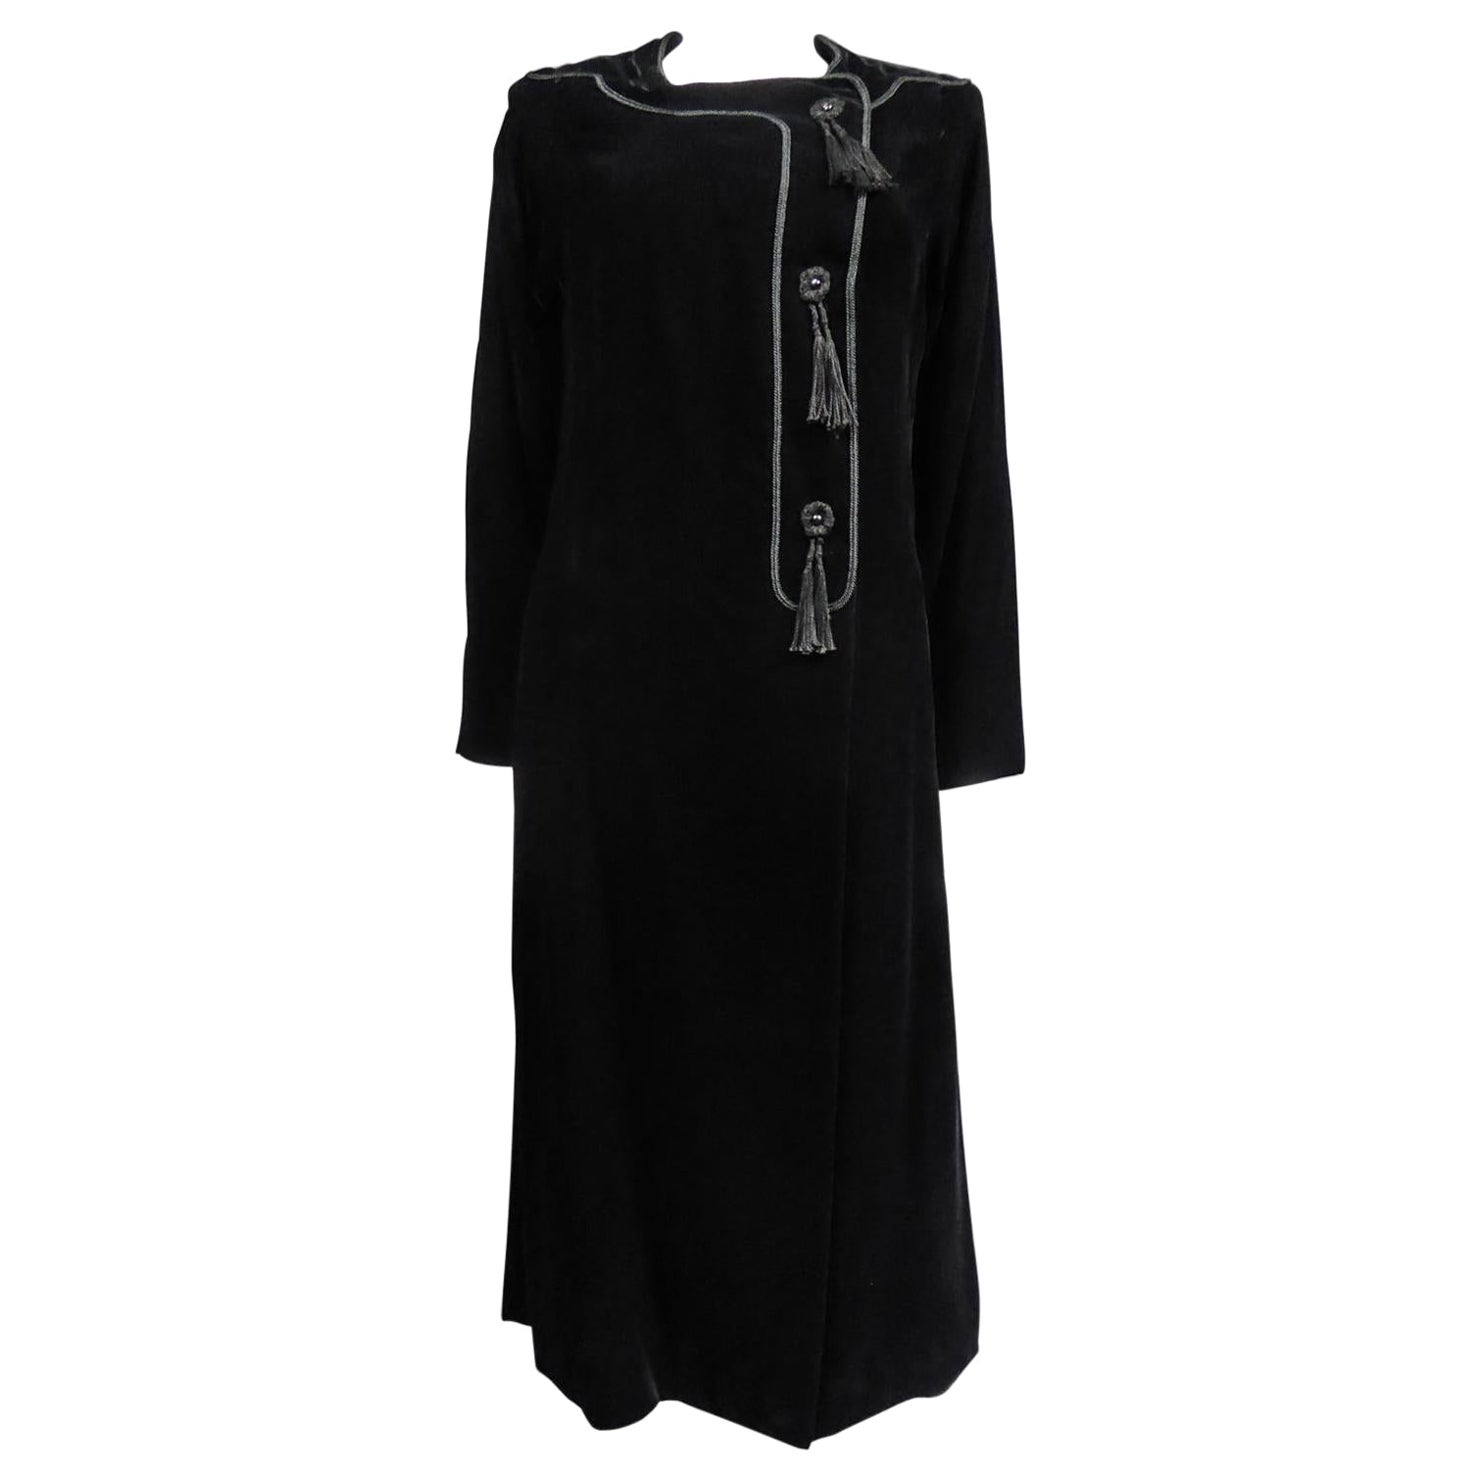 Emanuel Ungaro - Petite robe noire de haute couture française, numéro 4383-10-76, circa 1976 en vente